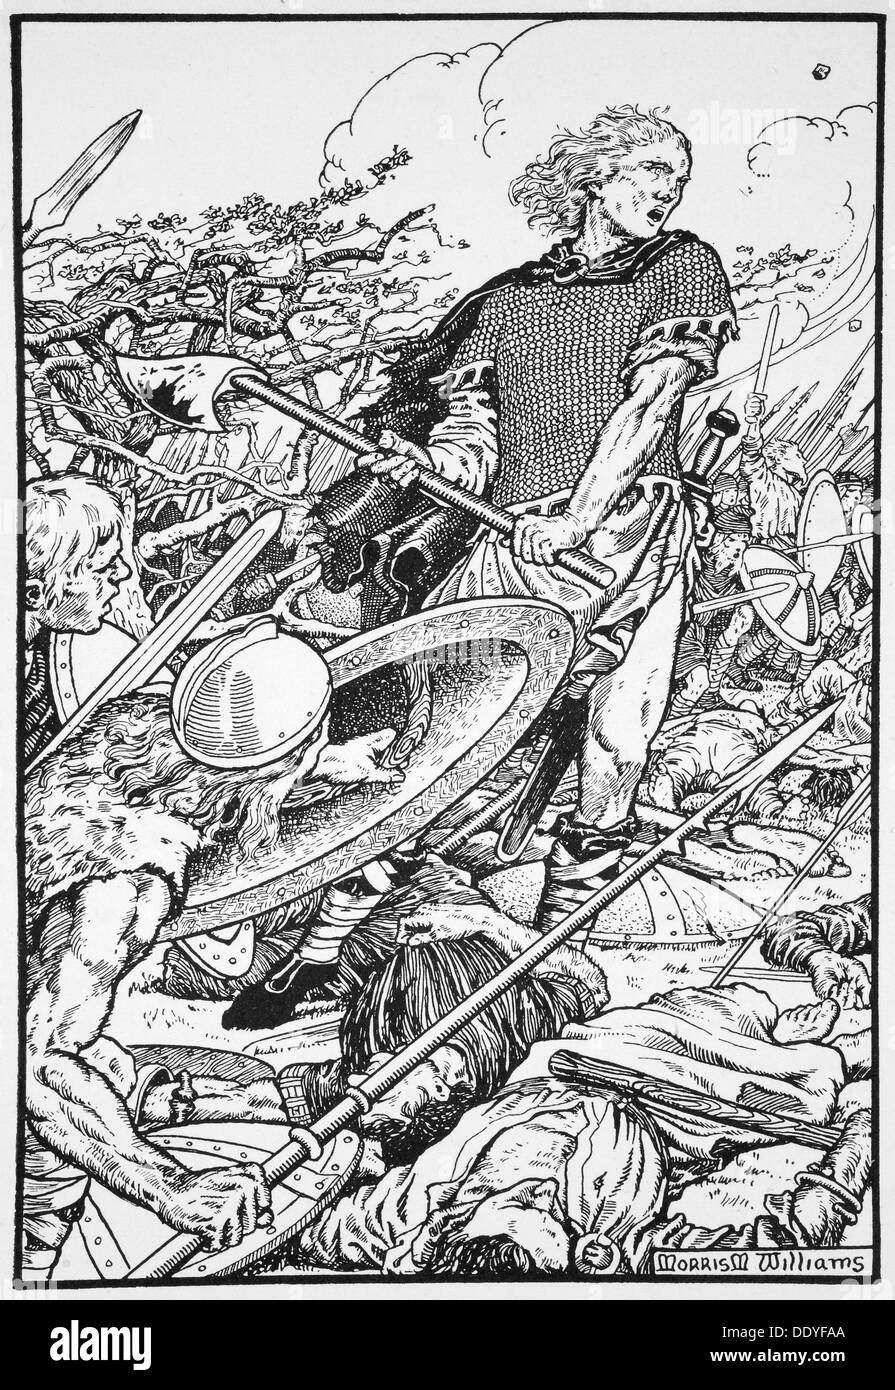 Alfredo il Grande nella battaglia di Ashdown, 871 (1913). Artista: Morris Meredith Williams Foto Stock